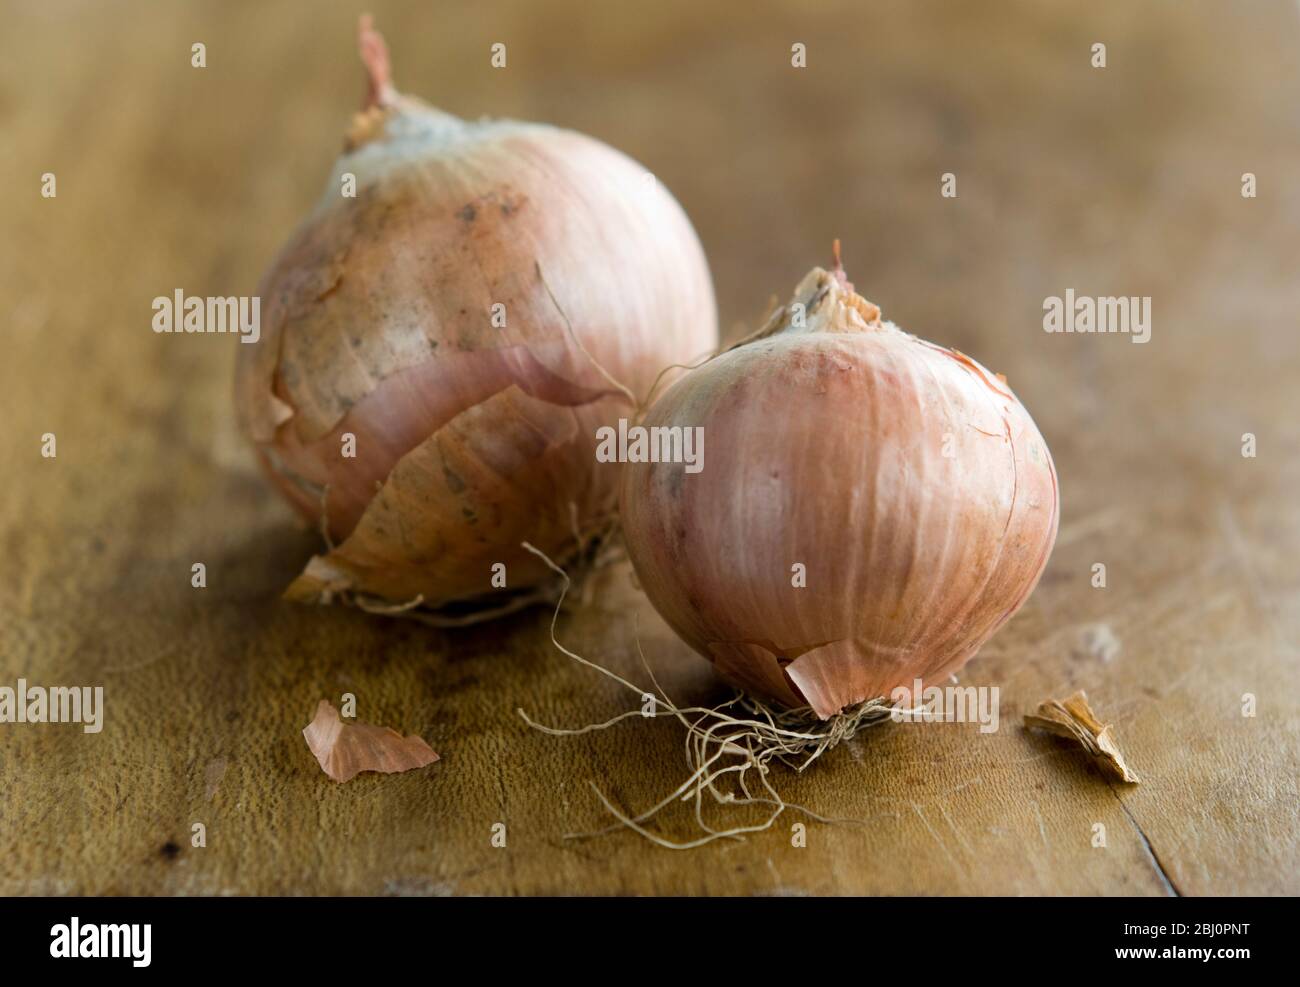 Zwei ganze kleine Zwiebeln ungeschält auf Holzbrett - Stockfoto